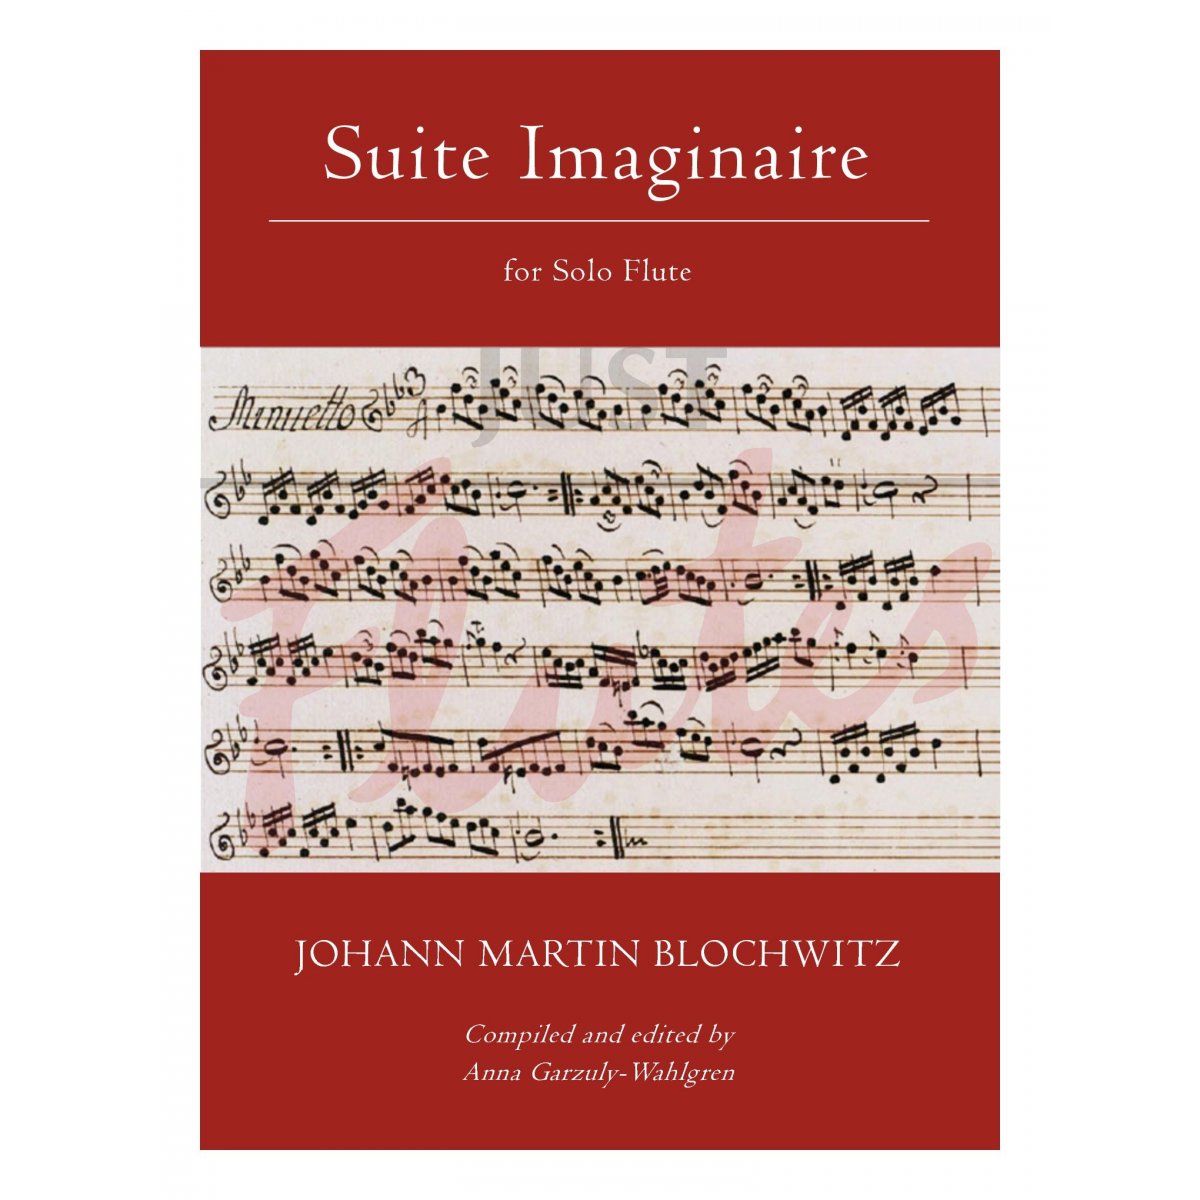 Suite Imaginaire for Solo Flute